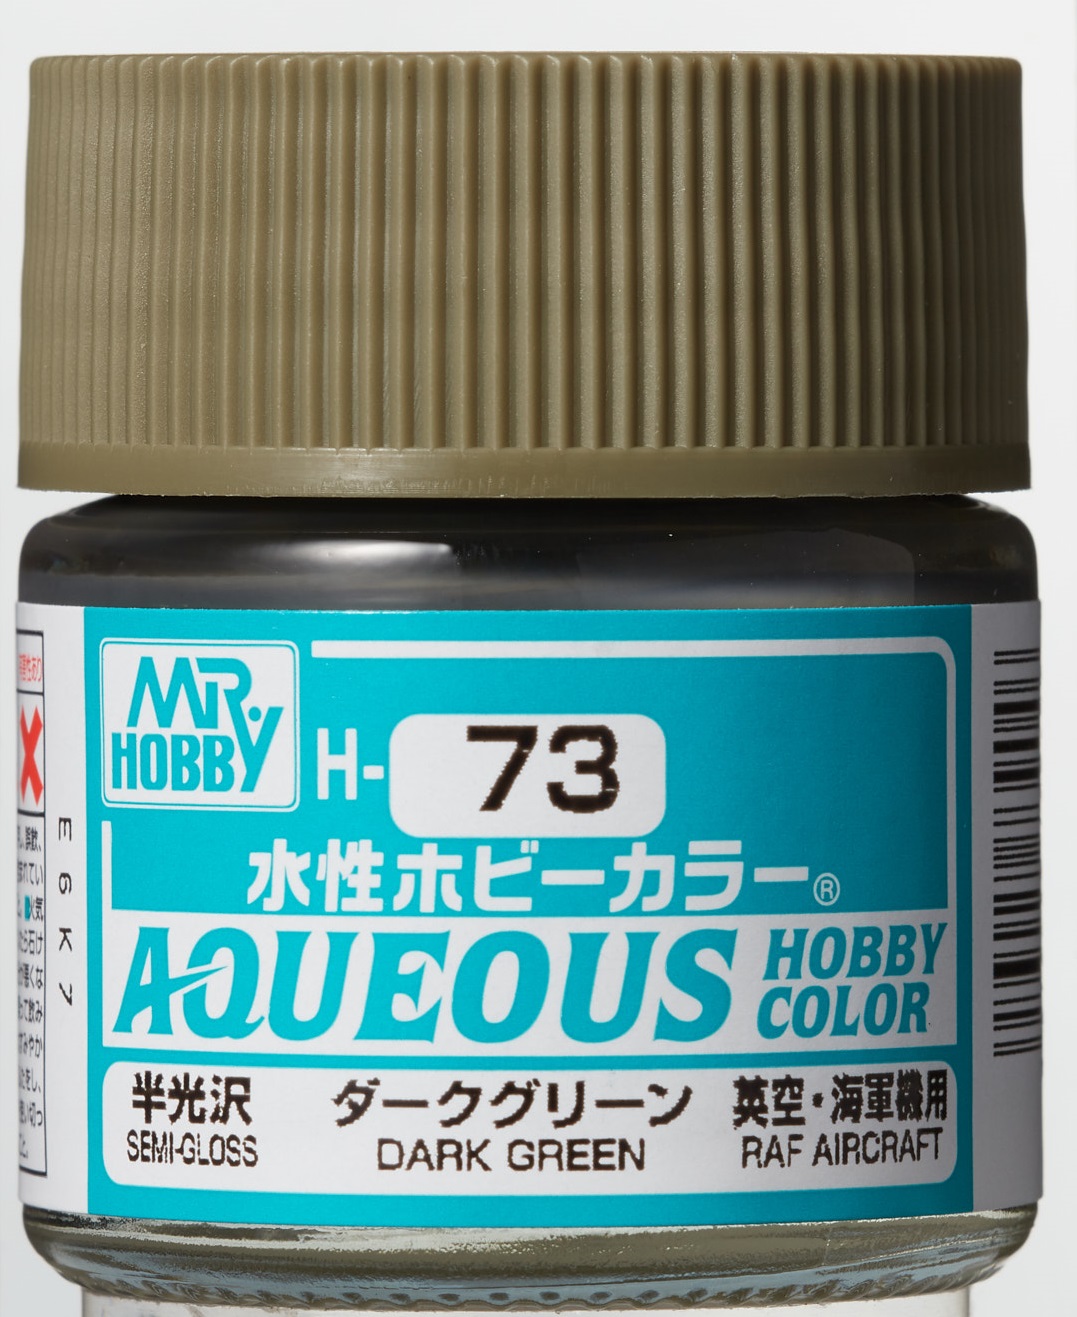 Mr. Aqueous Hobby Color - Dark Green (2)  - H73 - Dunkelgrün